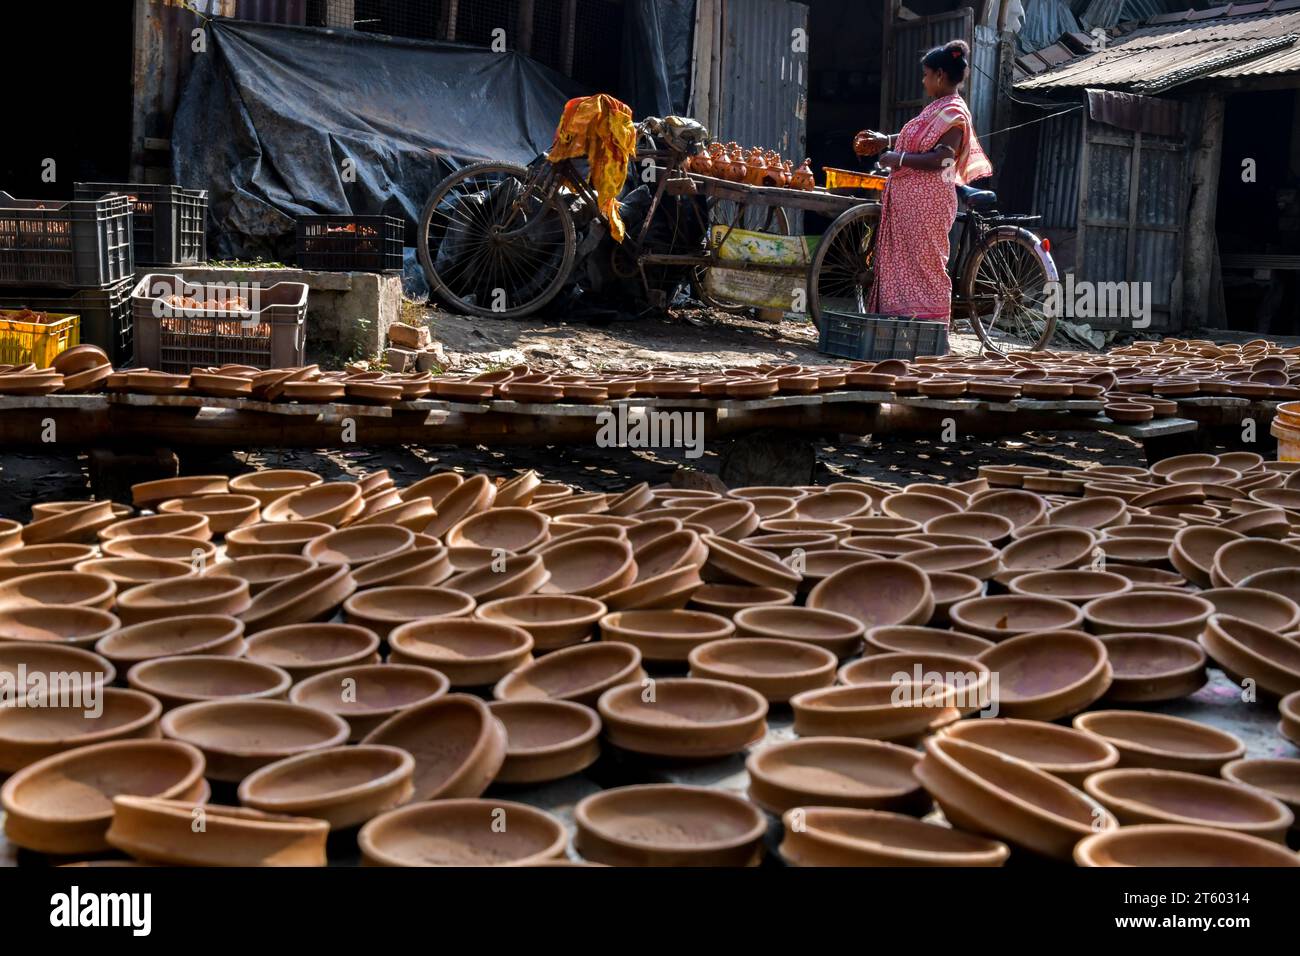 Ein Arbeiter färbt eine Erdlampe im Töpferdorf Chaltaberia, rund 40 km von Kalkutta in Westbengalen. Das ganze Dorf ist im vollen Rhythmus der irdenen Lampen- und Idol-Produktion vor dem Diwali-Festival in Indien. Erdlampen werden in allen indischen Städten verkauft, wie Kalkutta, Delhi, Mumbai, Hyderabad, Gujarat, Assam, Patna und Rajasthan, besonders während der Festivalsaison. Sogar Erdlampen werden vor den Diwali-Feiern nach außerhalb Indiens exportiert. Stockfoto